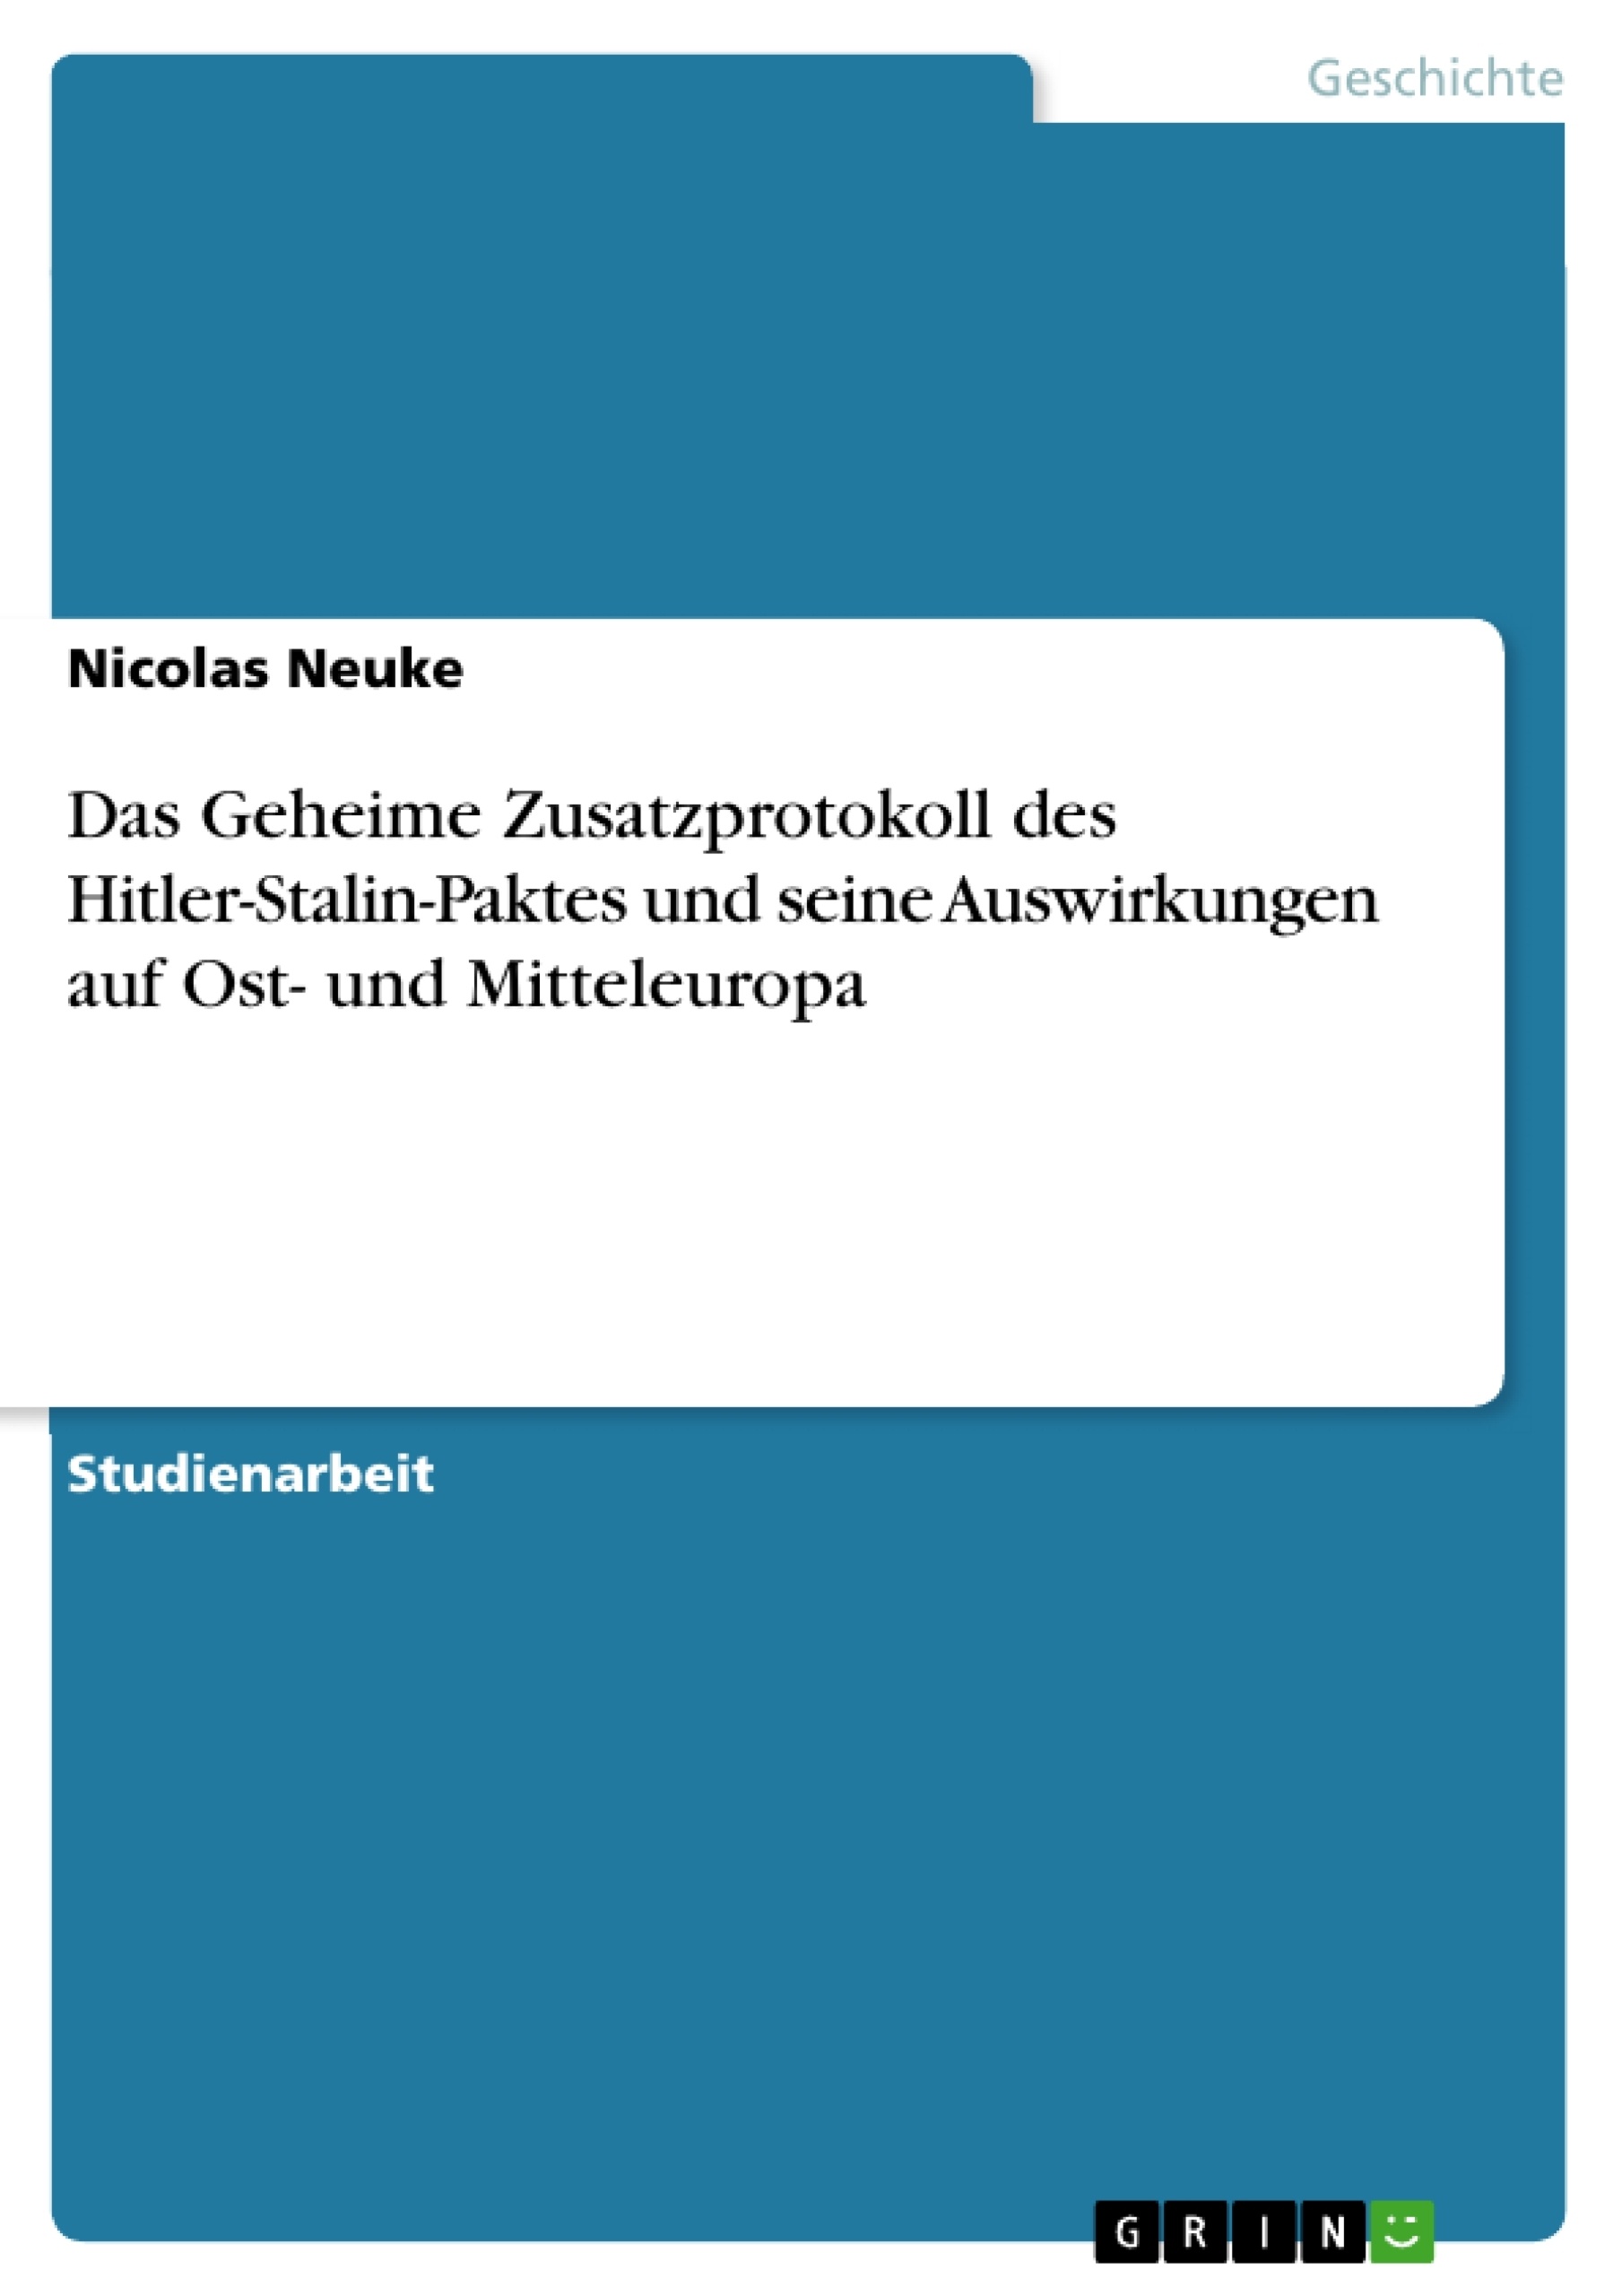 Title: Das Geheime Zusatzprotokoll des Hitler-Stalin-Paktes und seine Auswirkungen auf Ost- und Mitteleuropa